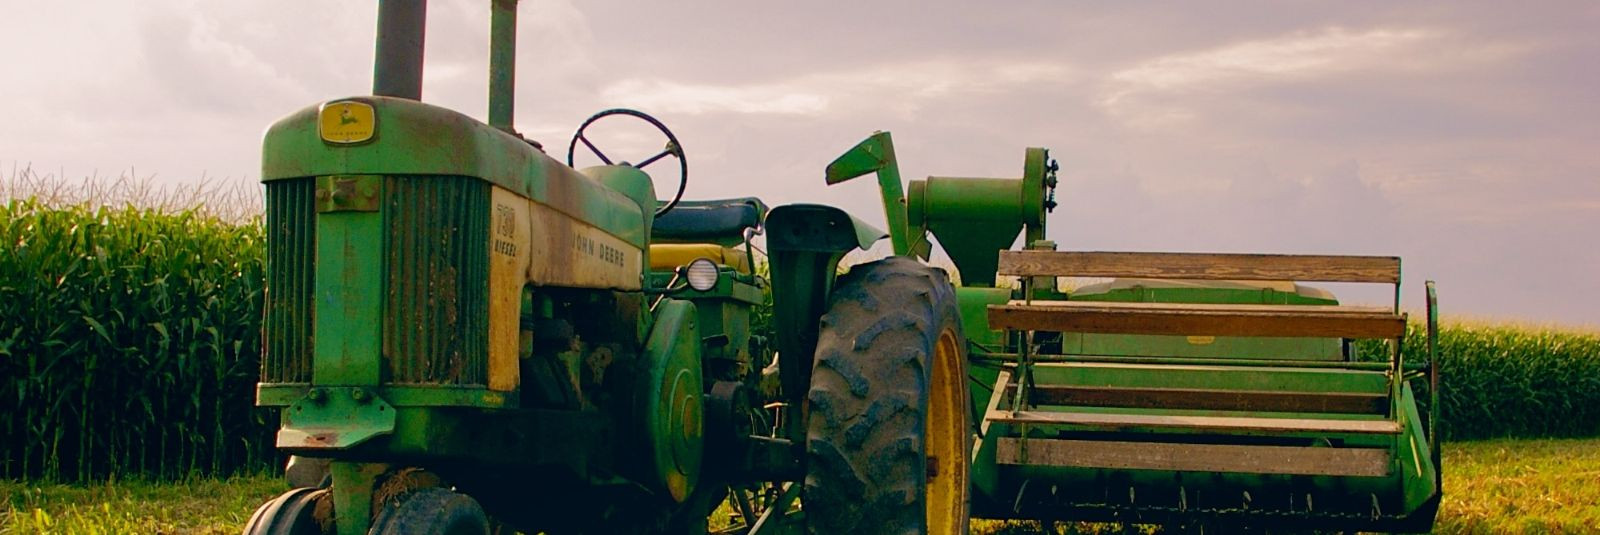 Põllumajandustehnika, eriti traktorid, on oluline osa igapäevasest ...